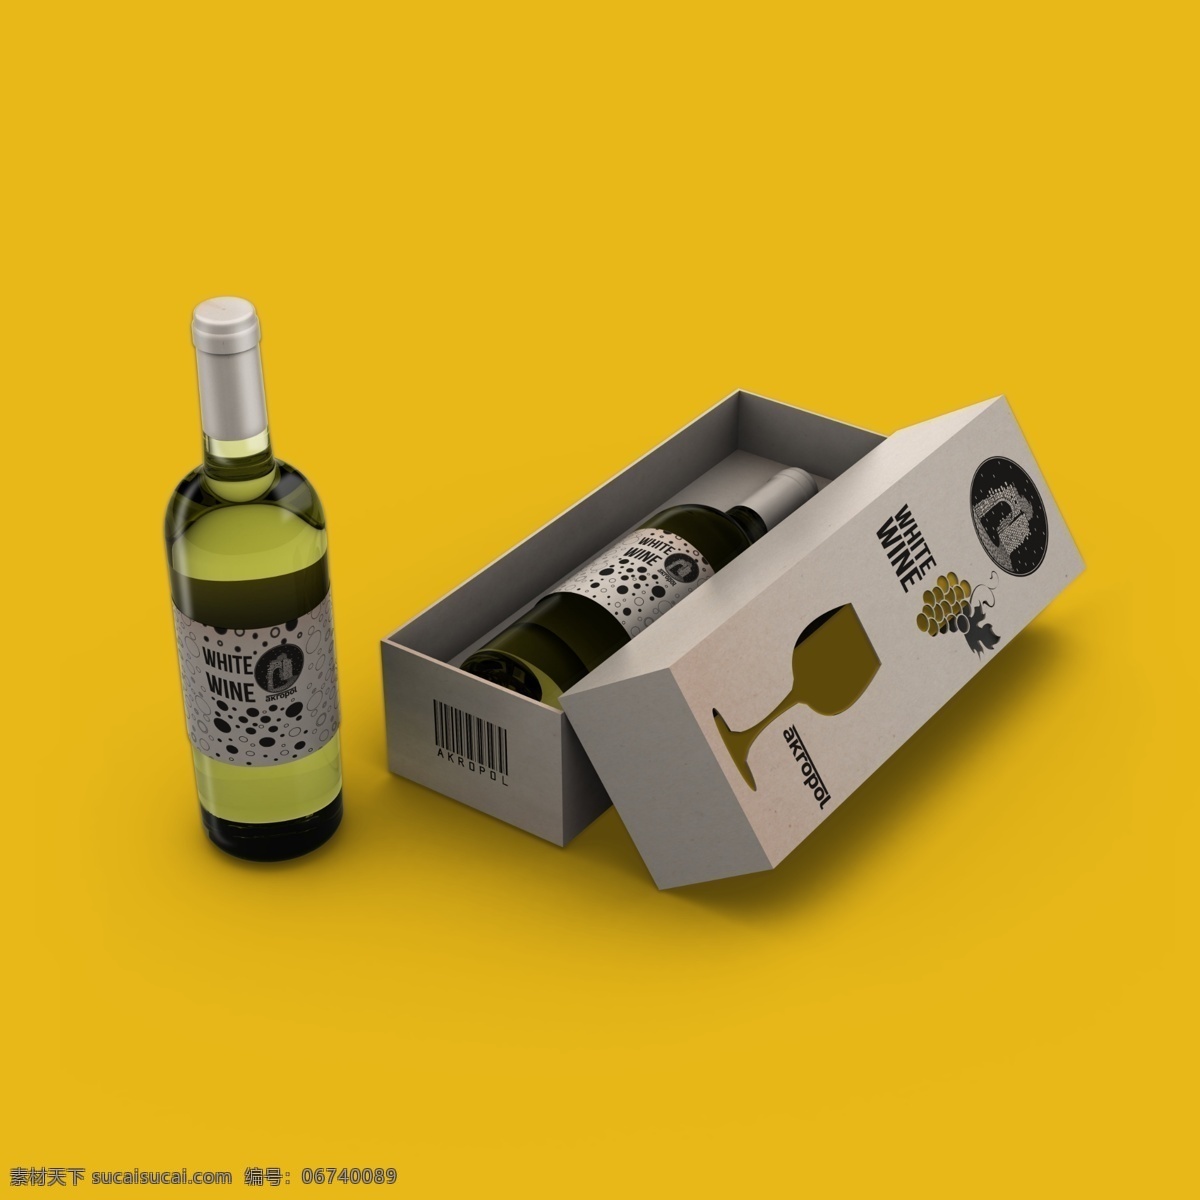 红酒瓶包装 红酒 香槟 包装 蓝色 黑色 简洁 葡萄酒 大气 起泡酒 黄色 礼盒 包装设计